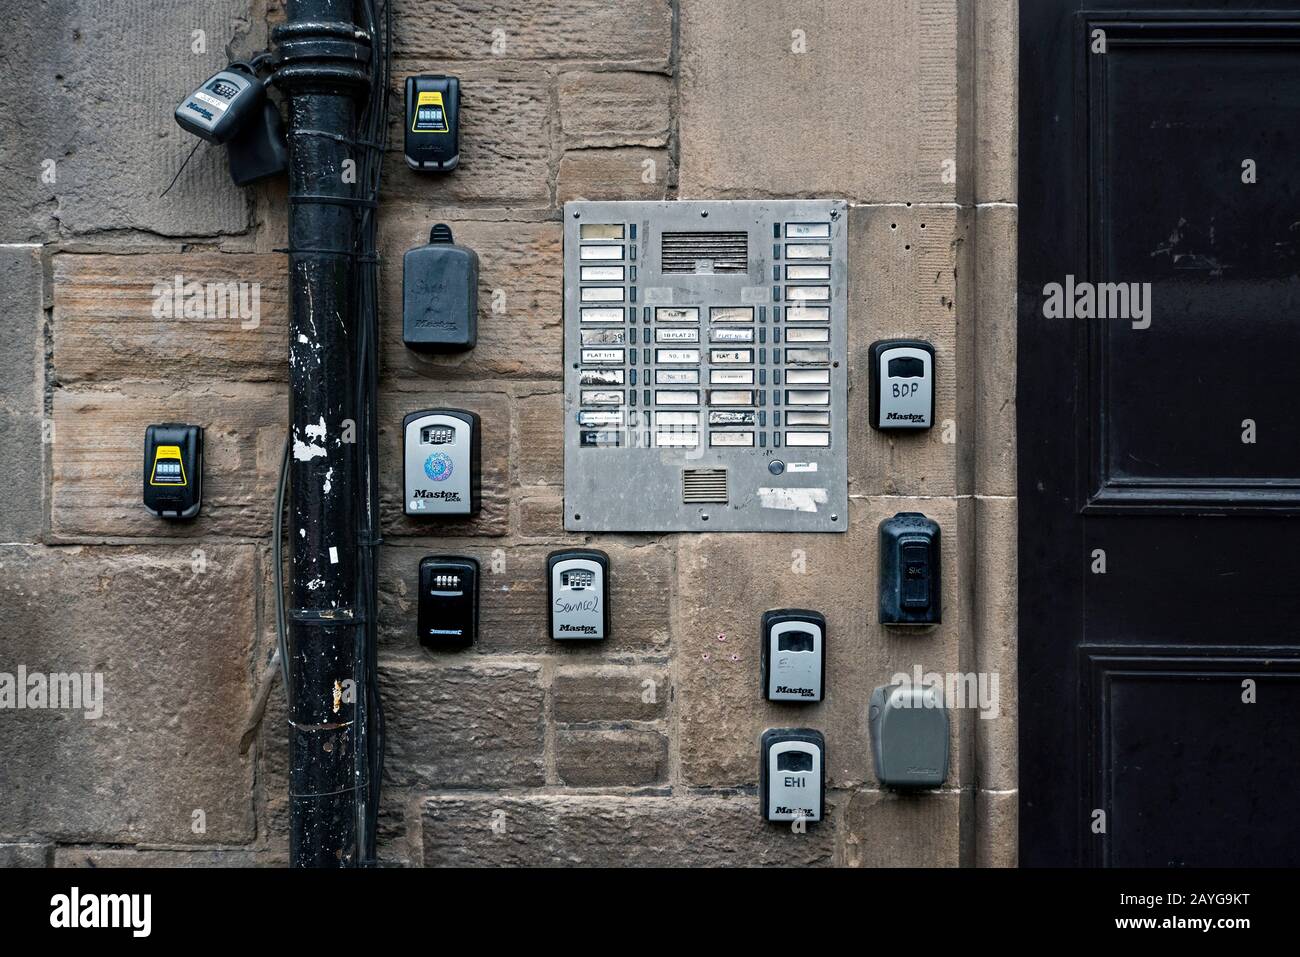 Schlüsselsafes für Airbnb oder kurzfristige Abflugsets an einer Wand im Graßmarkt, Edinburgh, Schottland, Großbritannien. Stockfoto